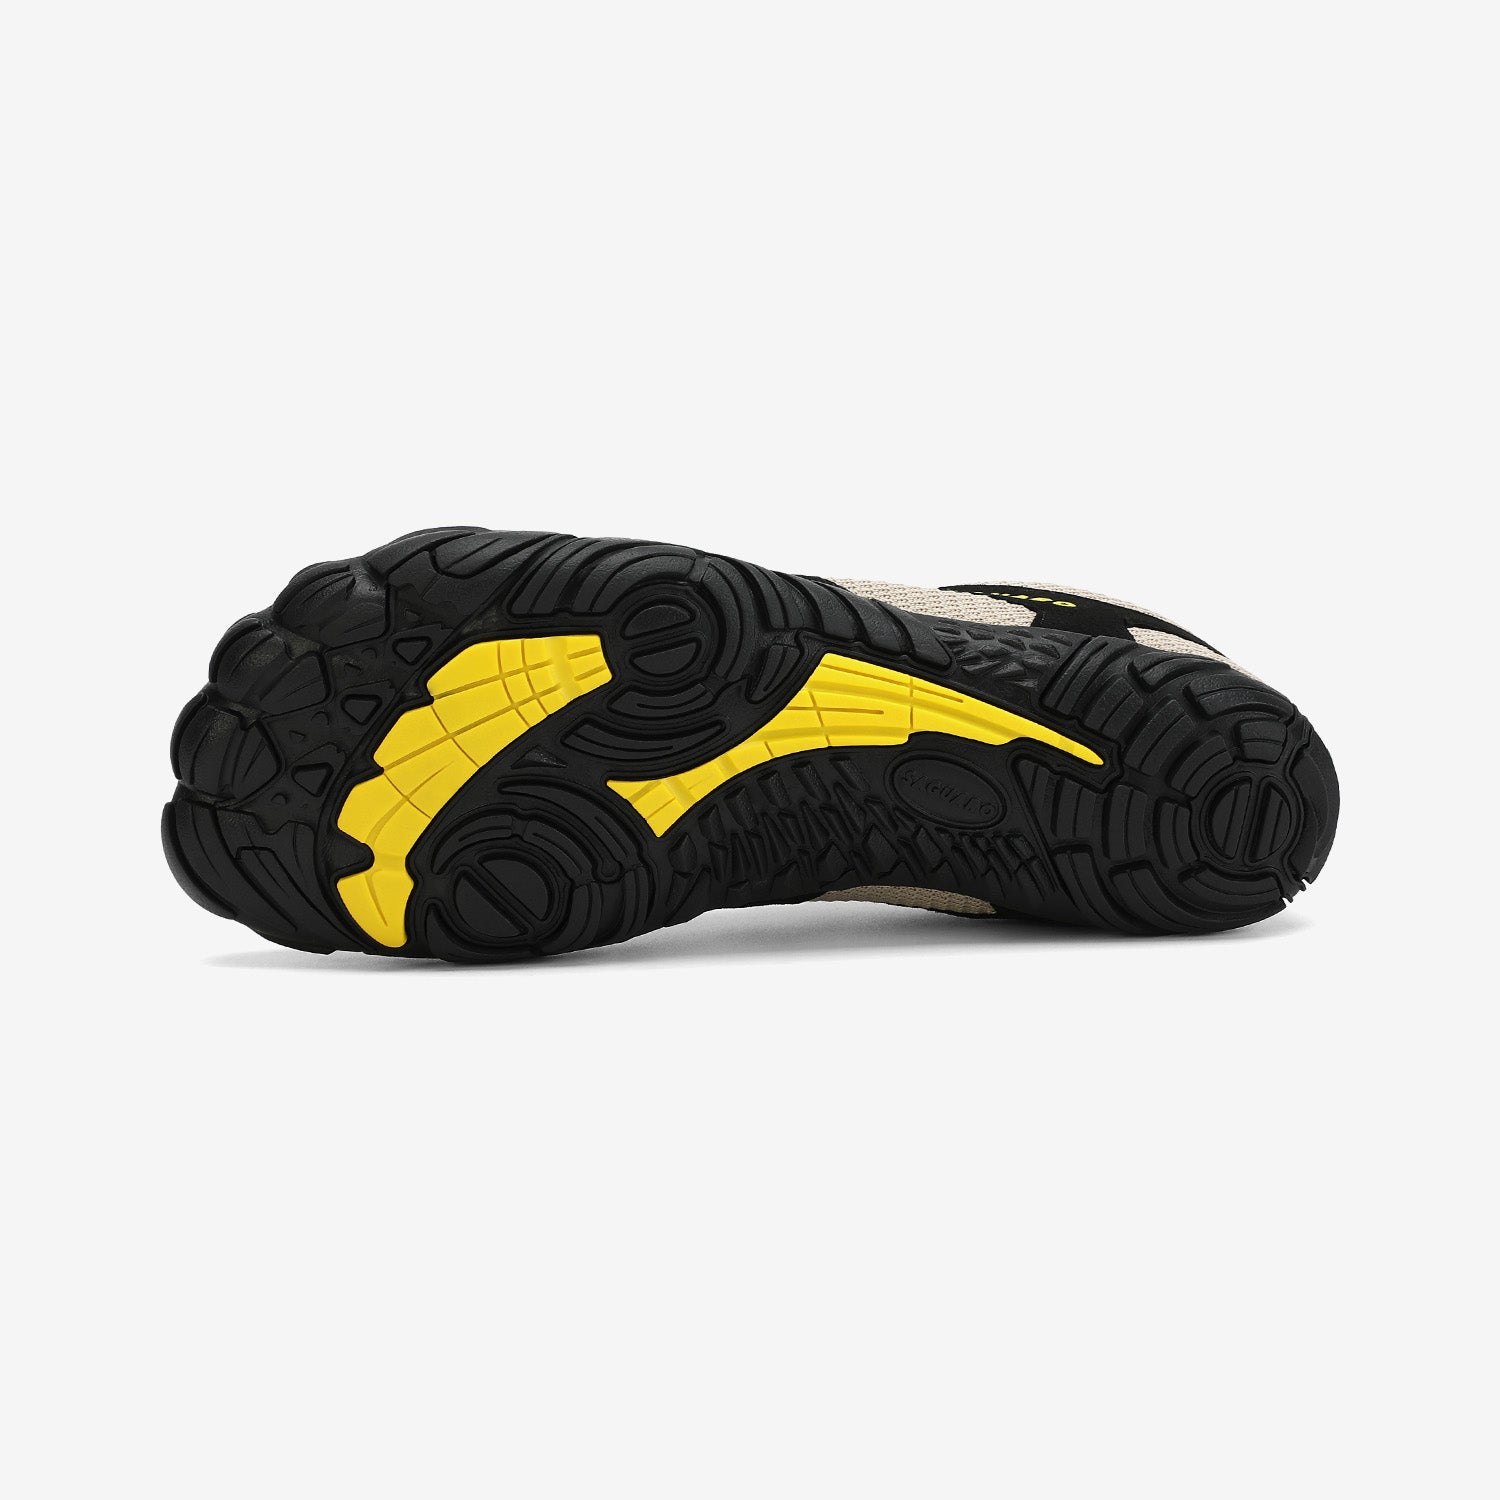 Saguaro® Barefoot & Minimalist Shoes: Walk Unrestrained – Saguaro Barefoot  Shoes